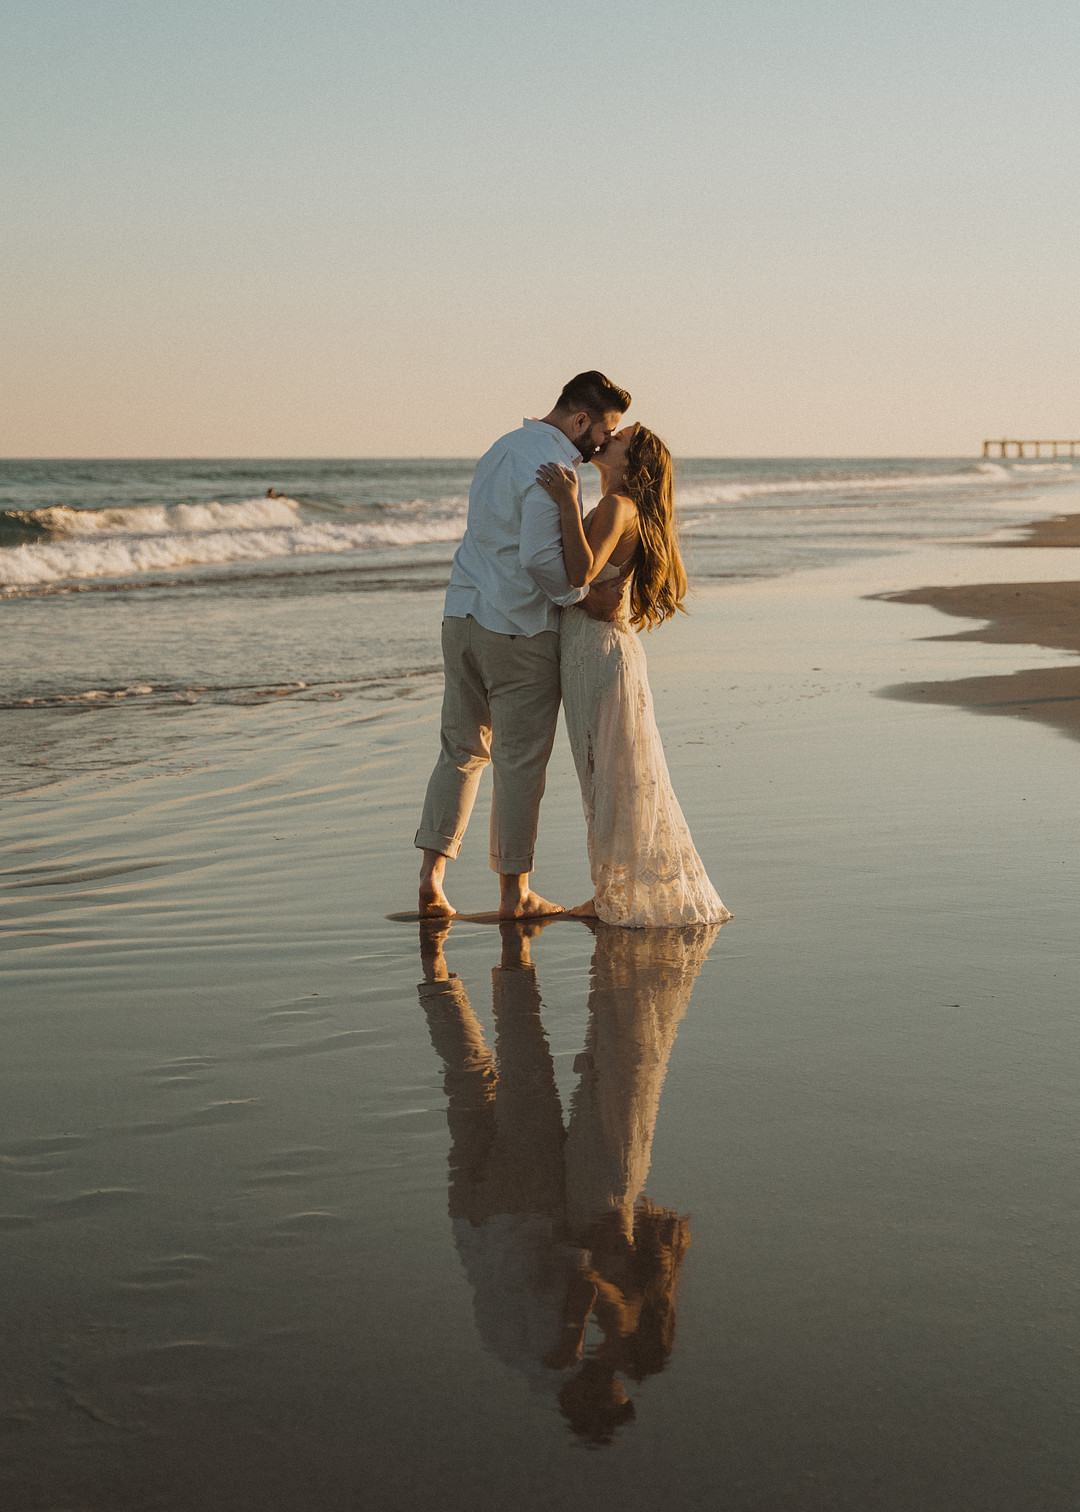 Am Strand kann man die schönsten Verlobungsbilder machen